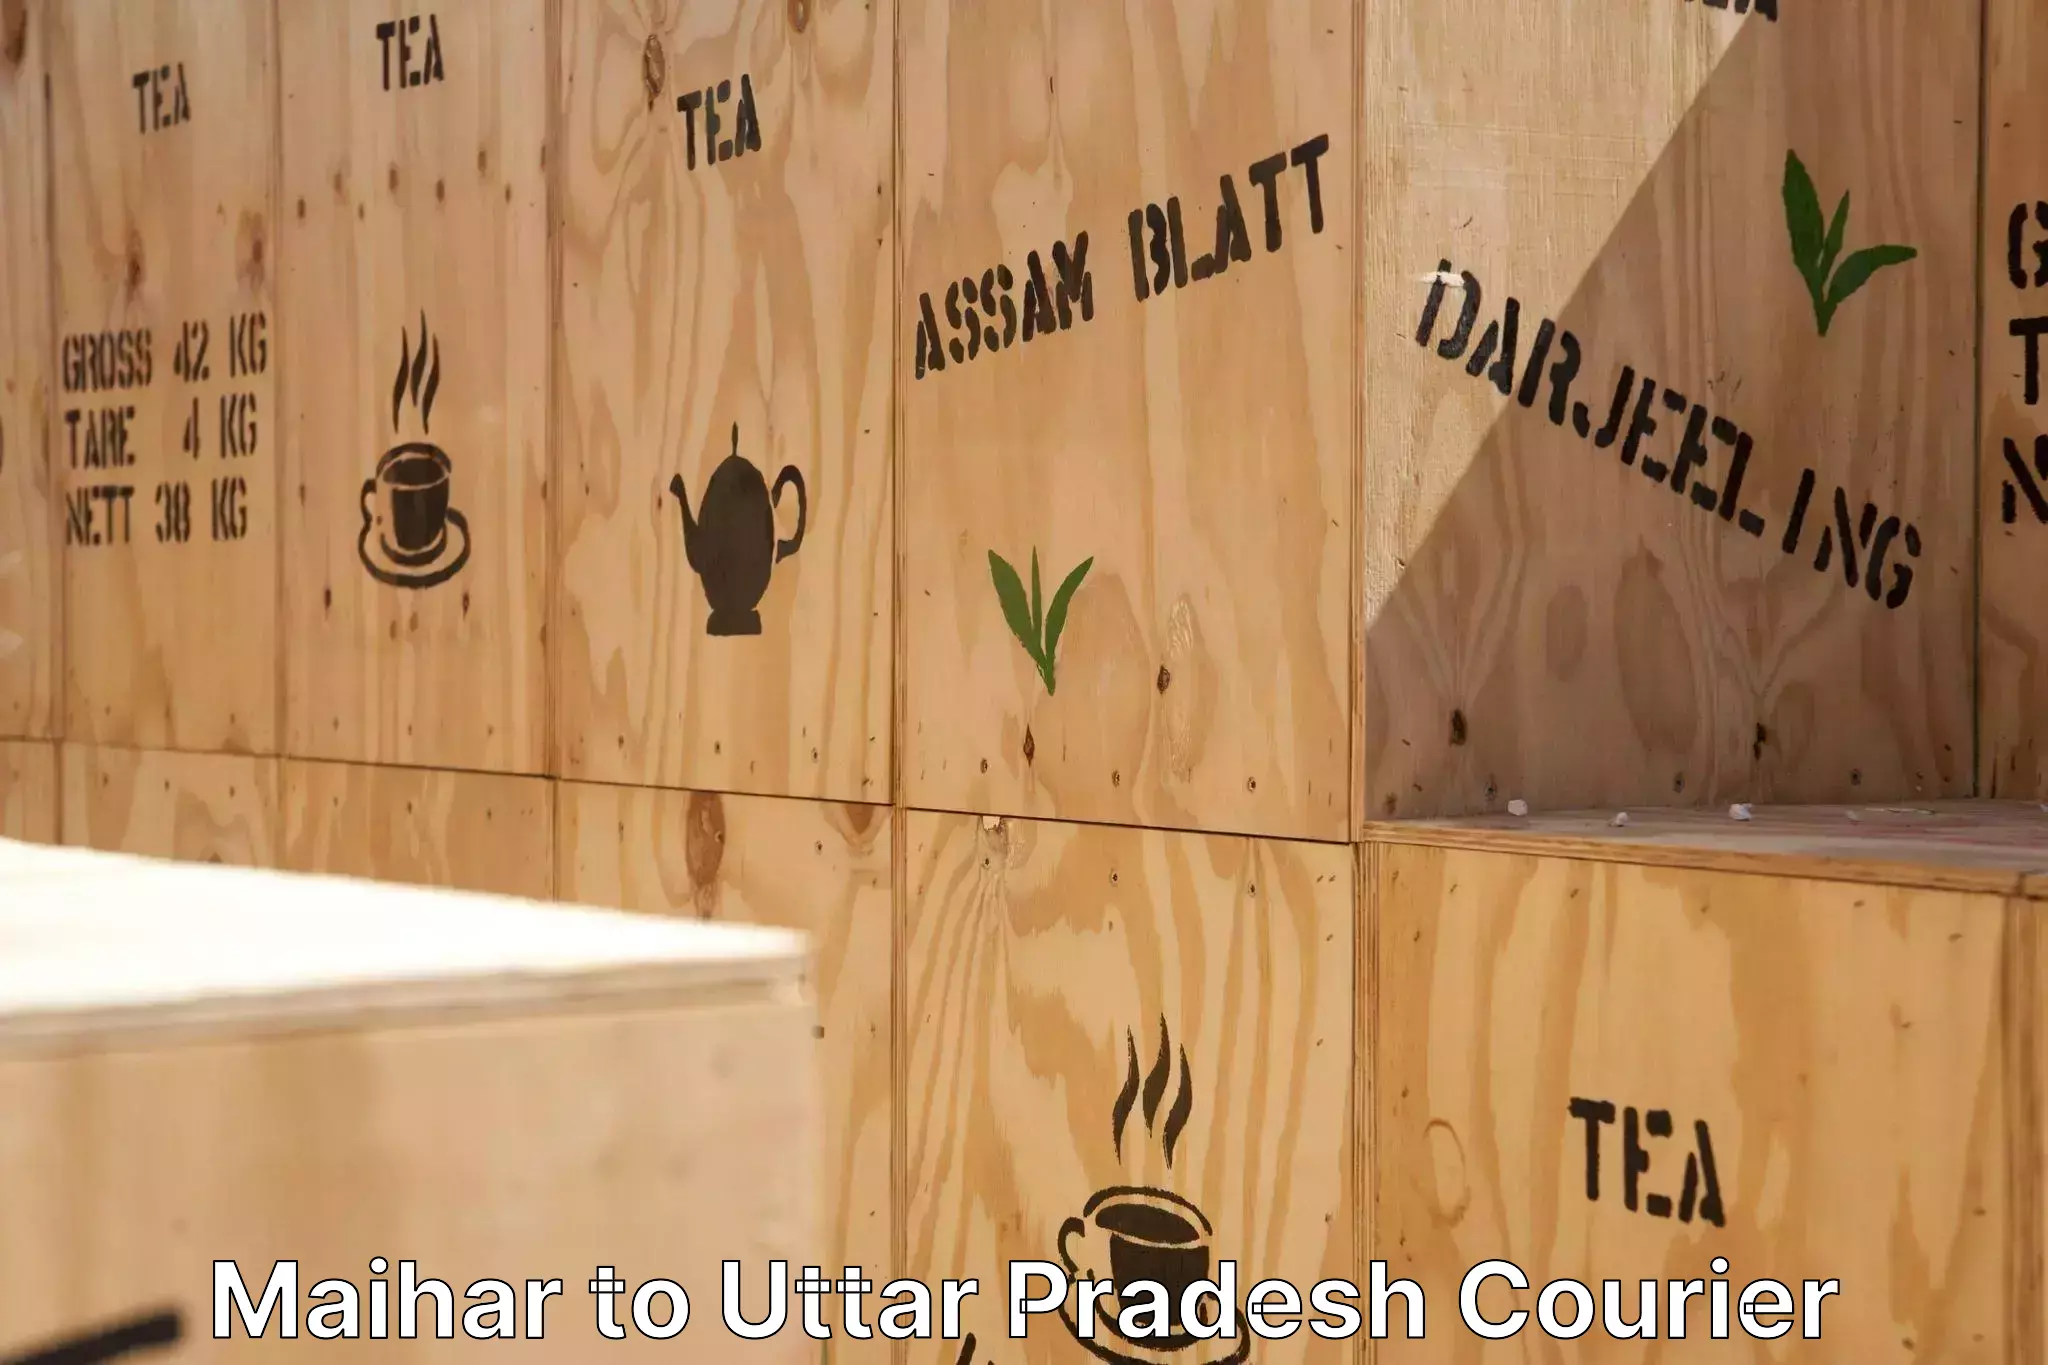 Full-service household moving Maihar to Uttar Pradesh